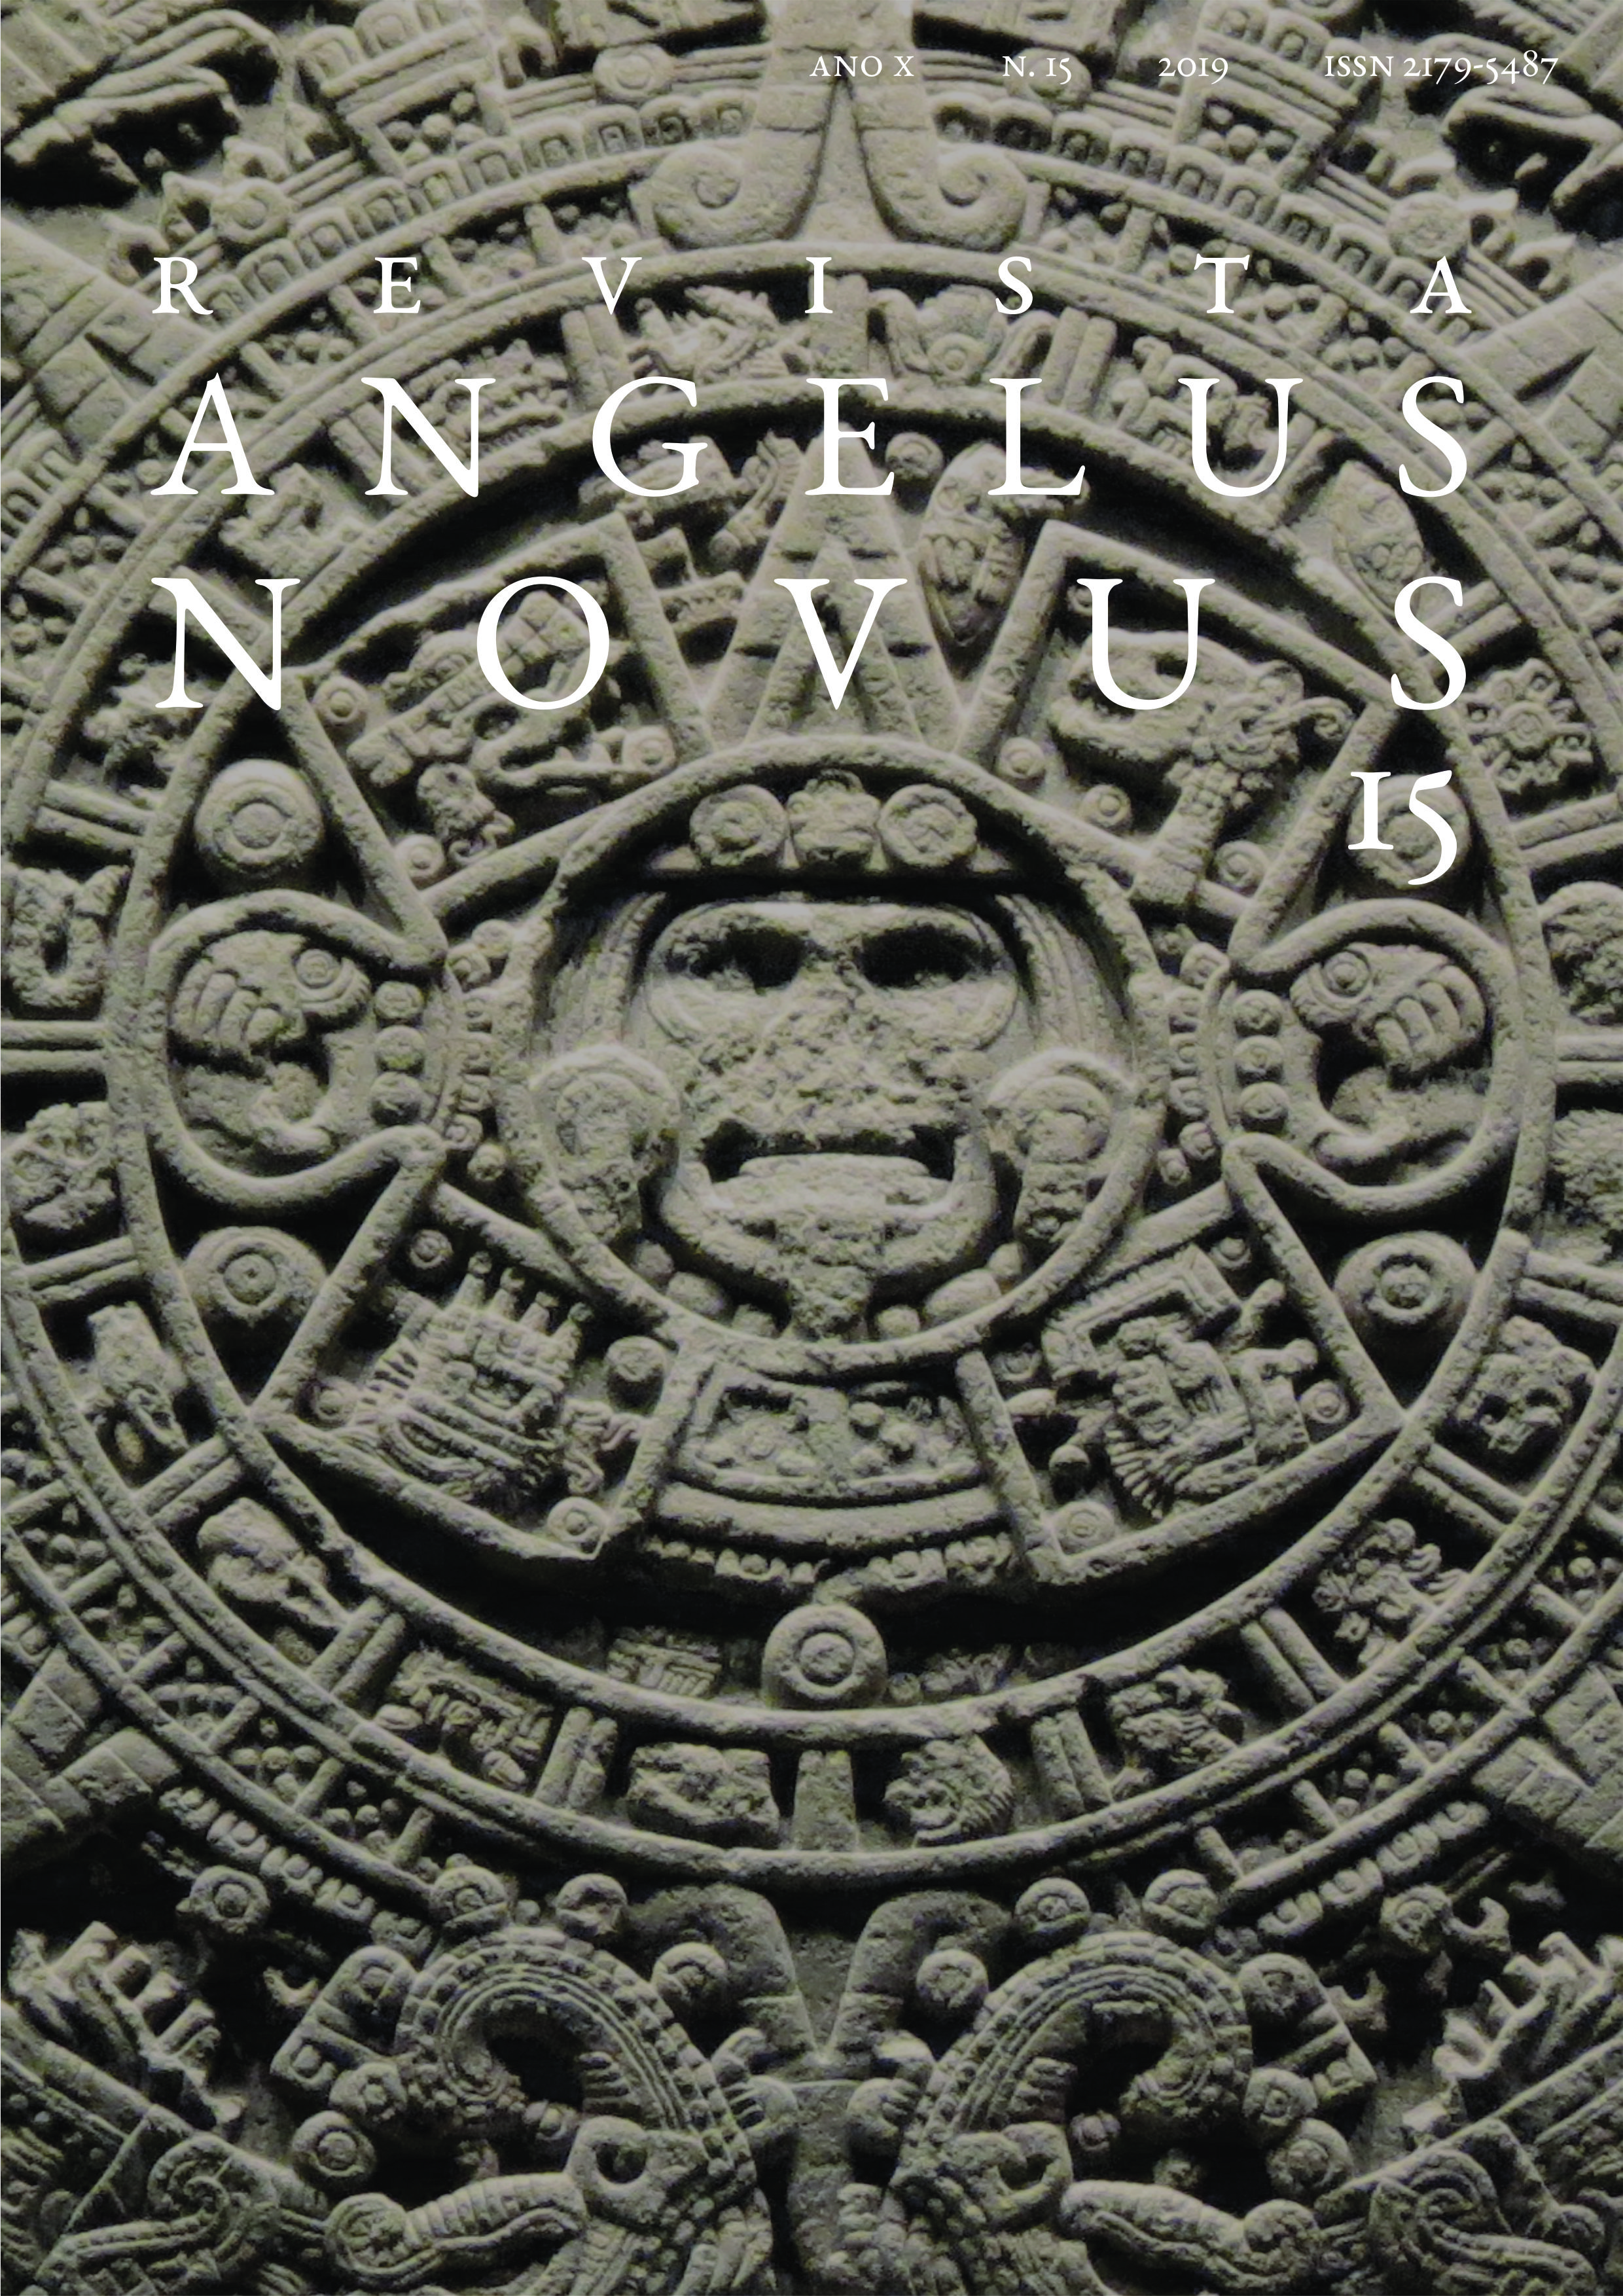 					View No. 15 (2019): Revista Angelus Novus
				